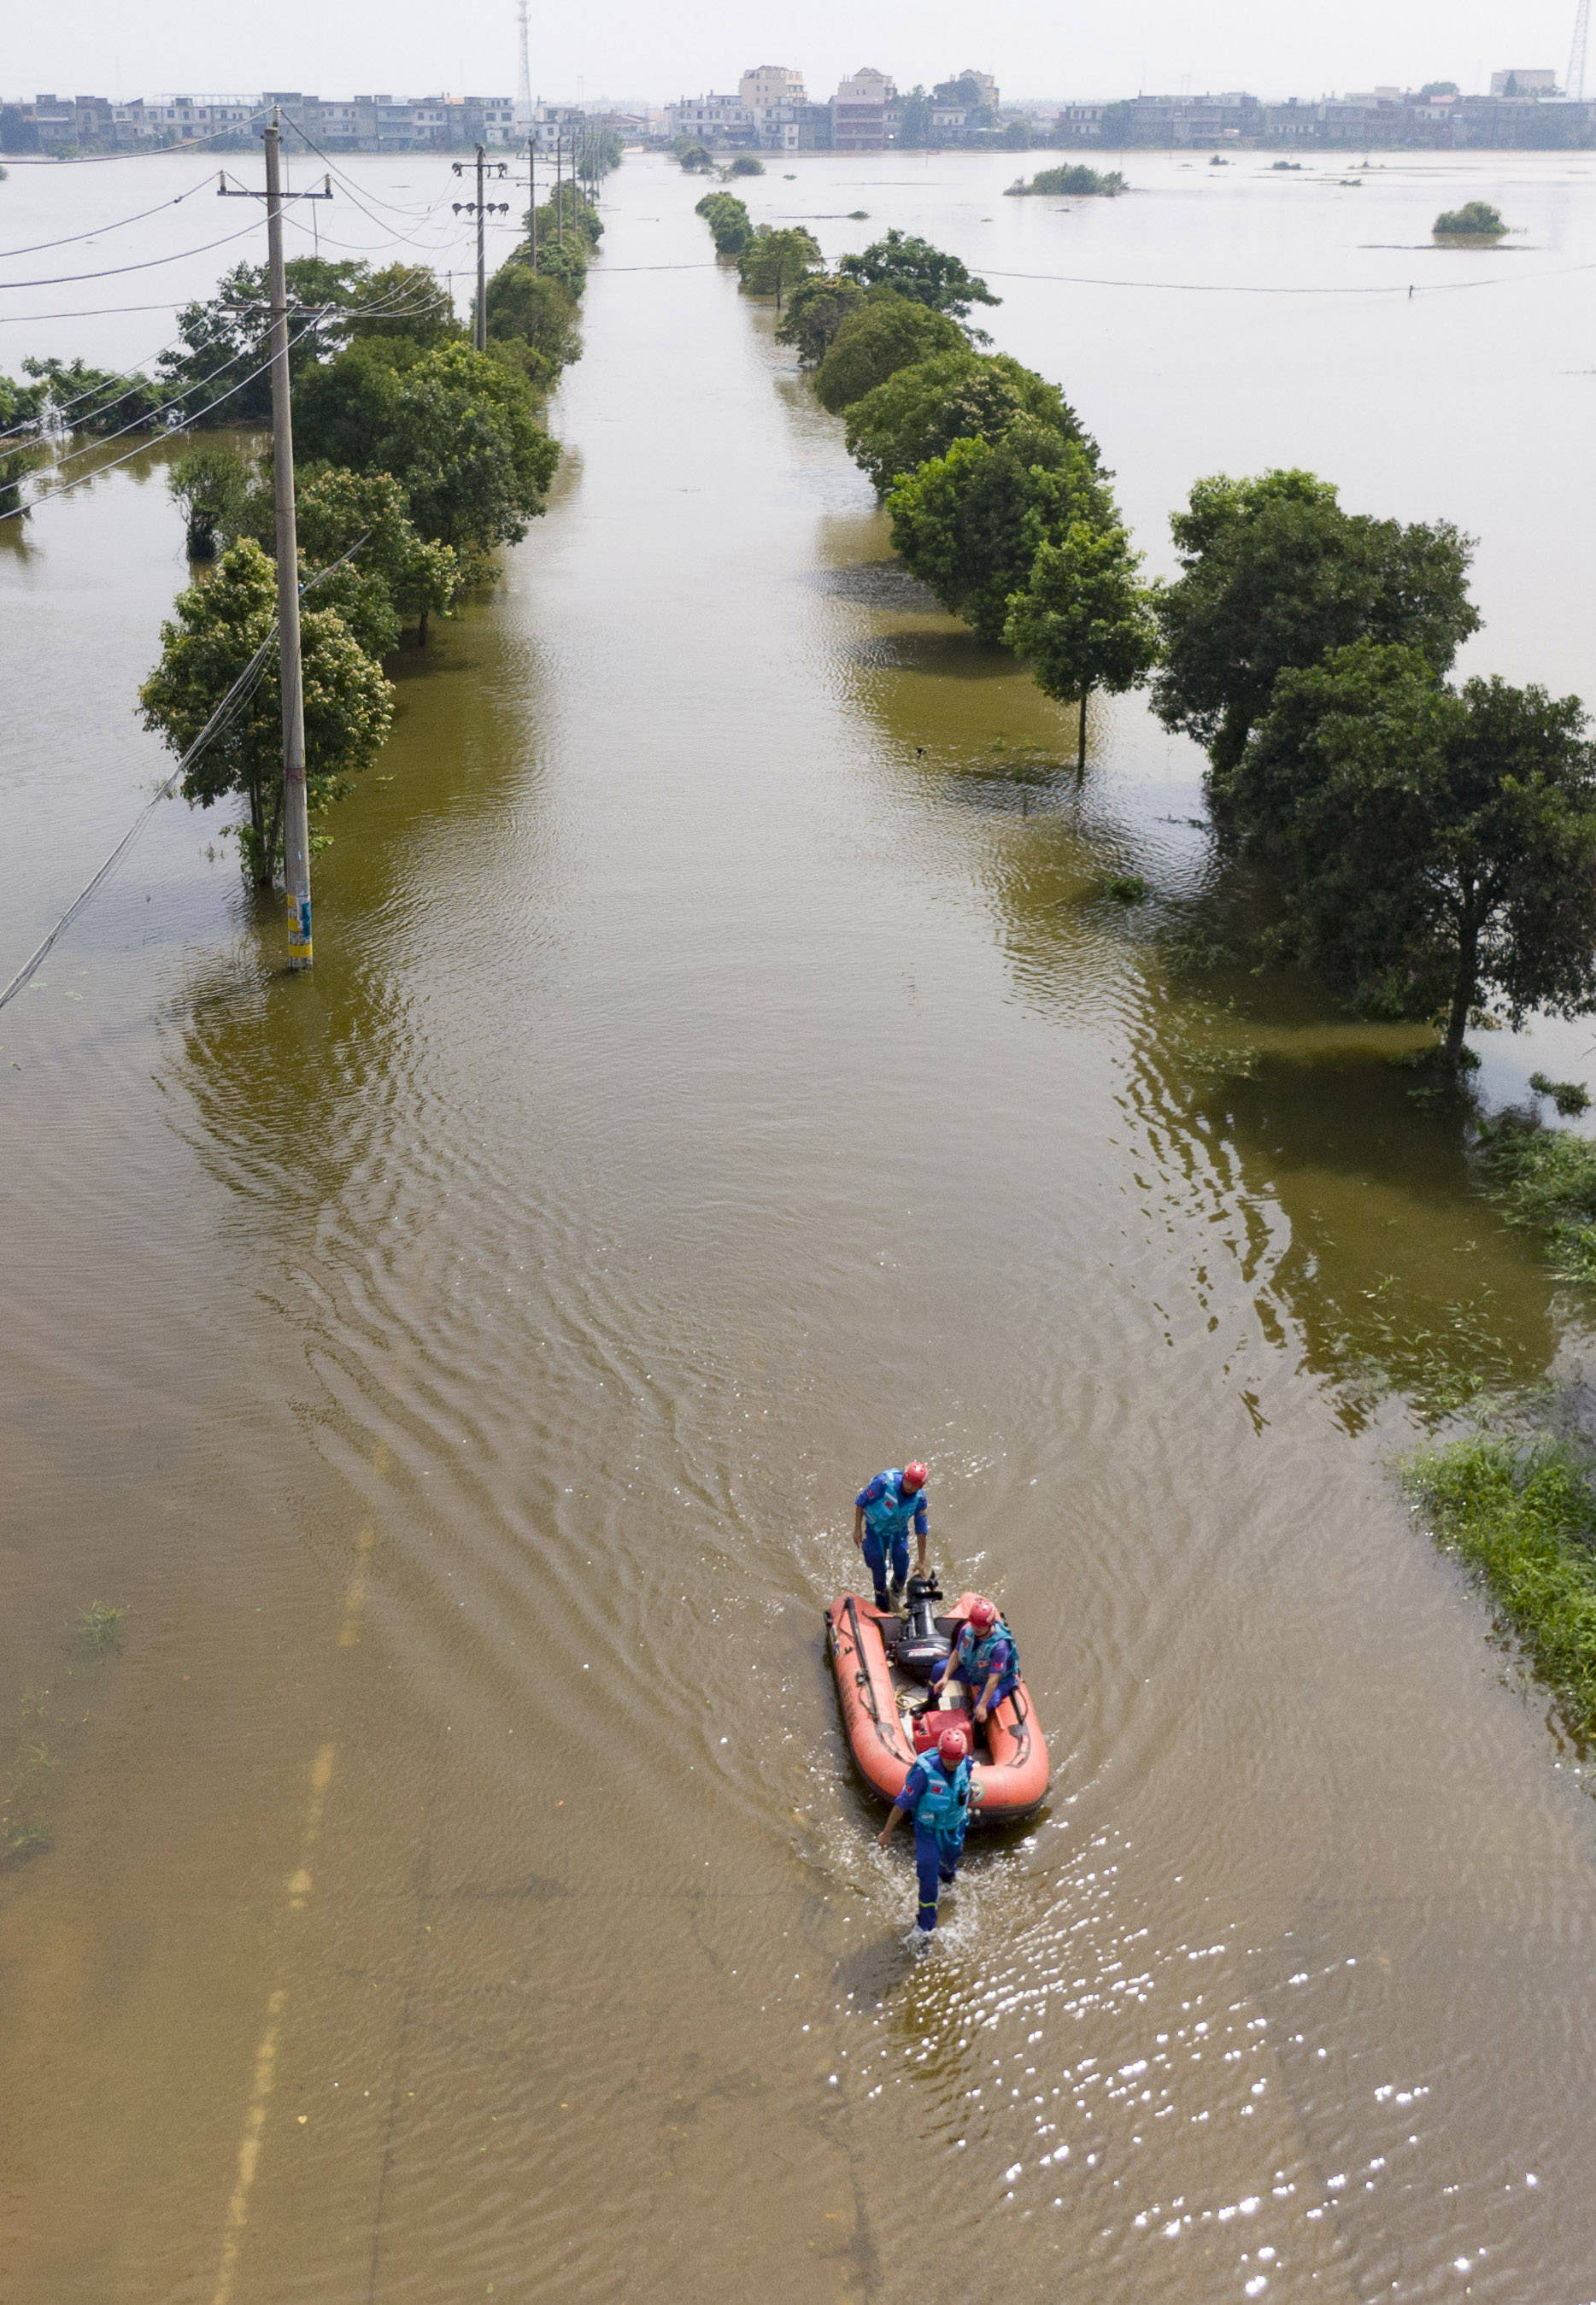 7月13日,在永修县三角乡,救援人员乘坐橡皮艇前往救援(无人机照片)